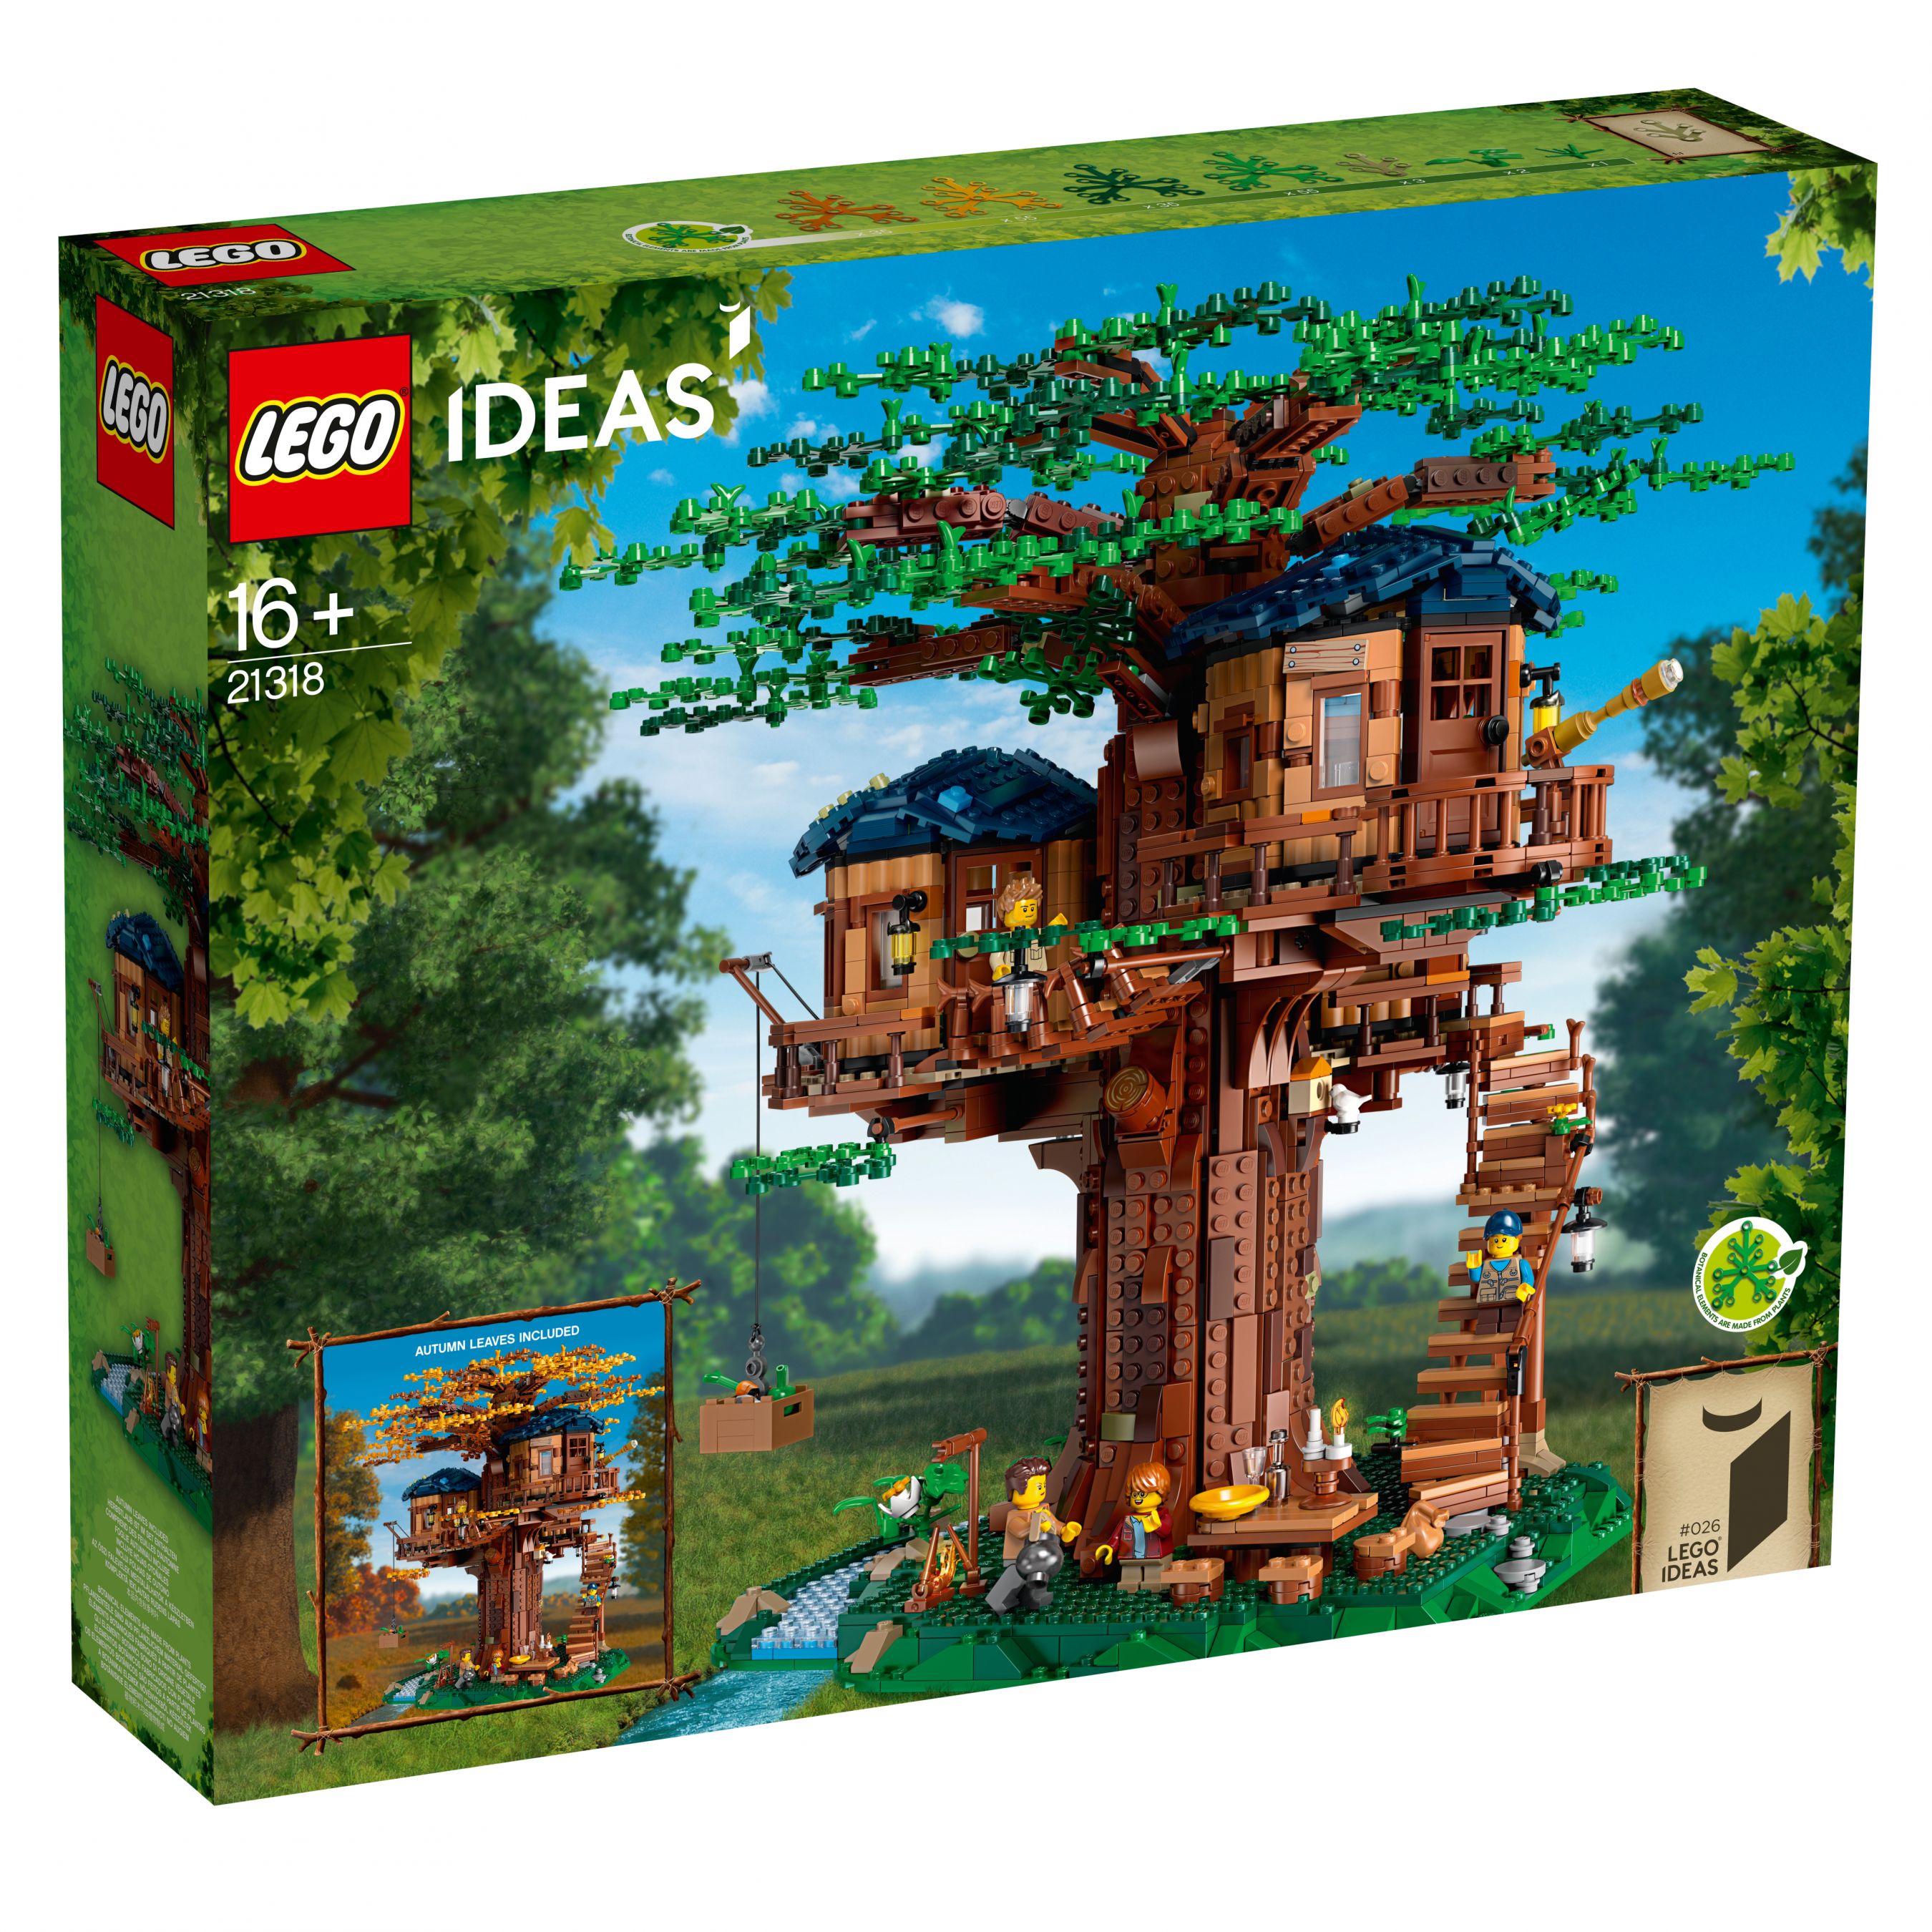 LEGO Ideas 21318 Baumhaus LEGO_21318_alt1.jpg